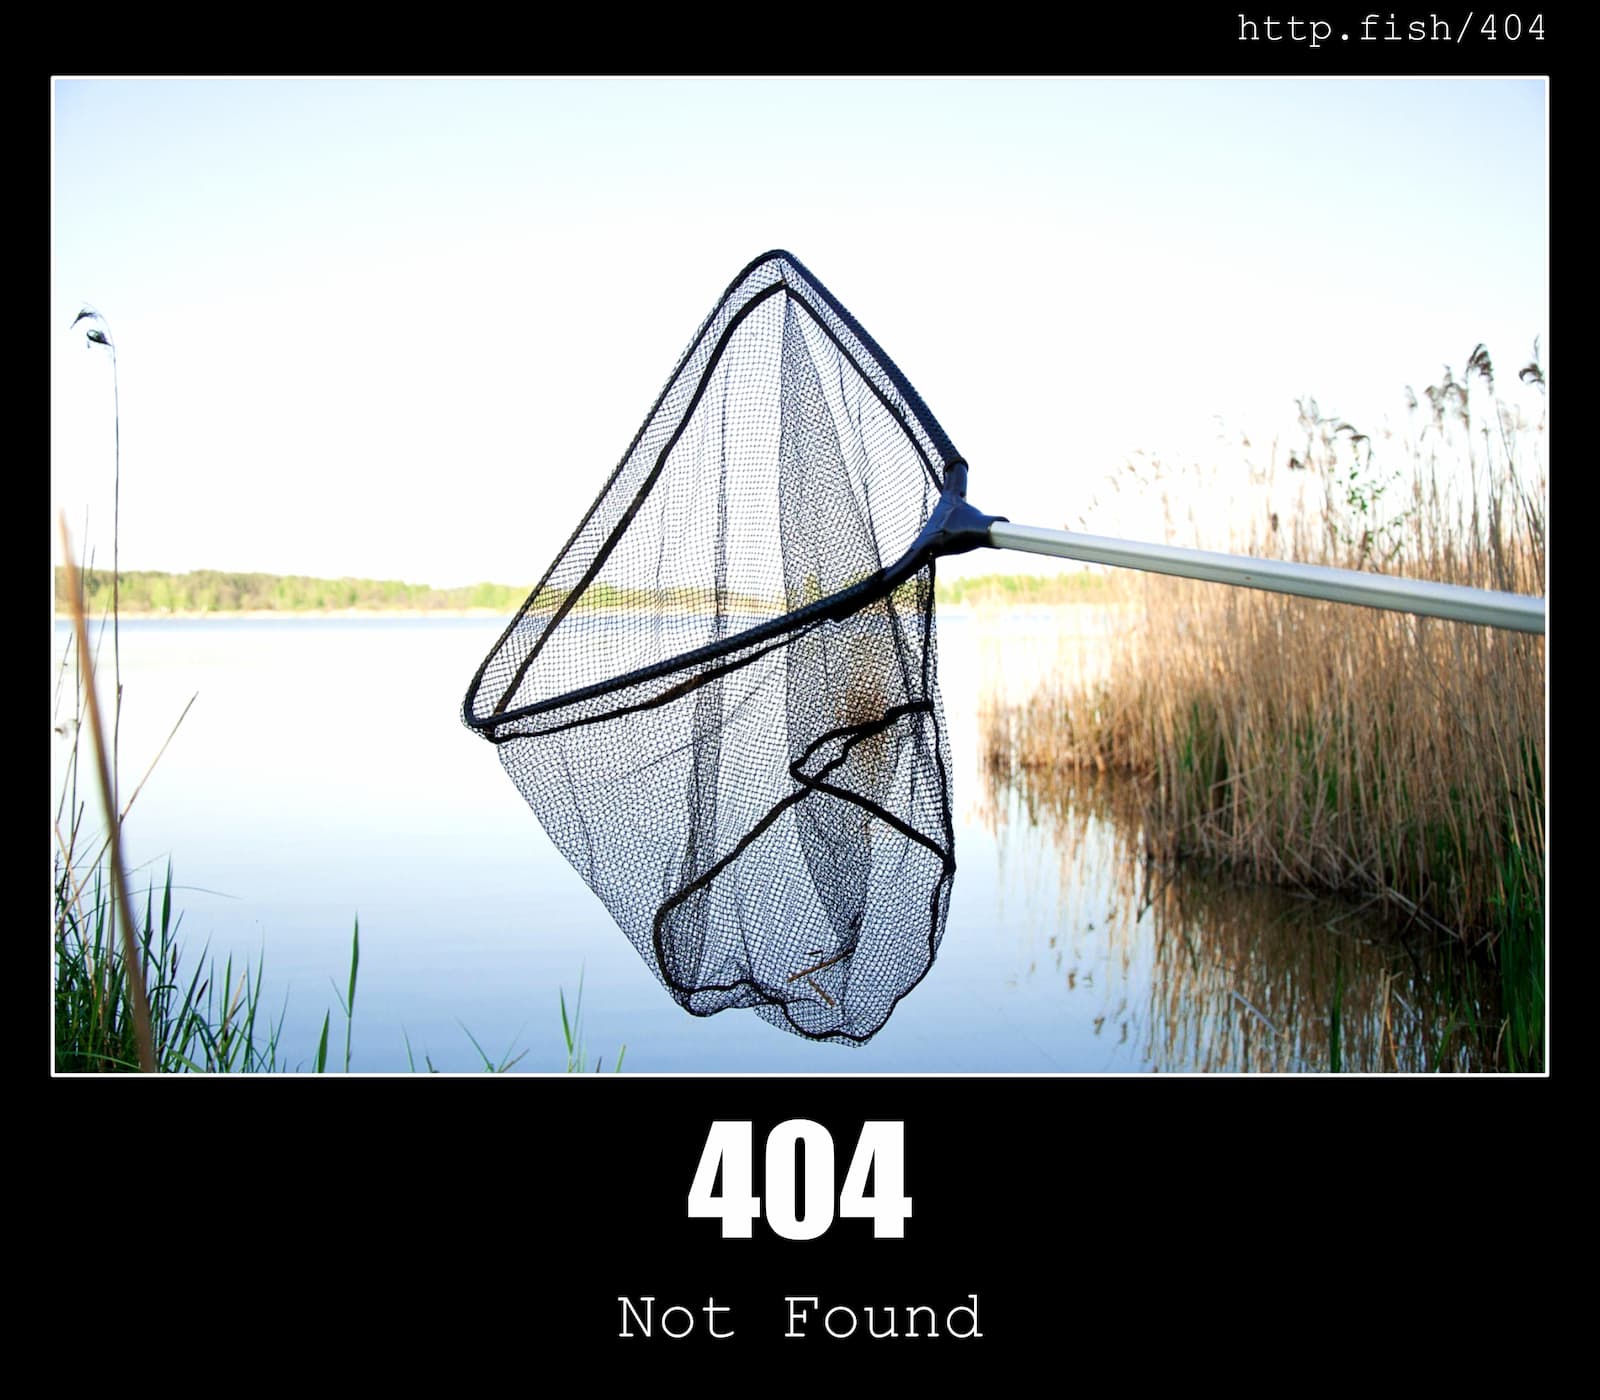 HTTP Status Code 404 Not Found & Fish